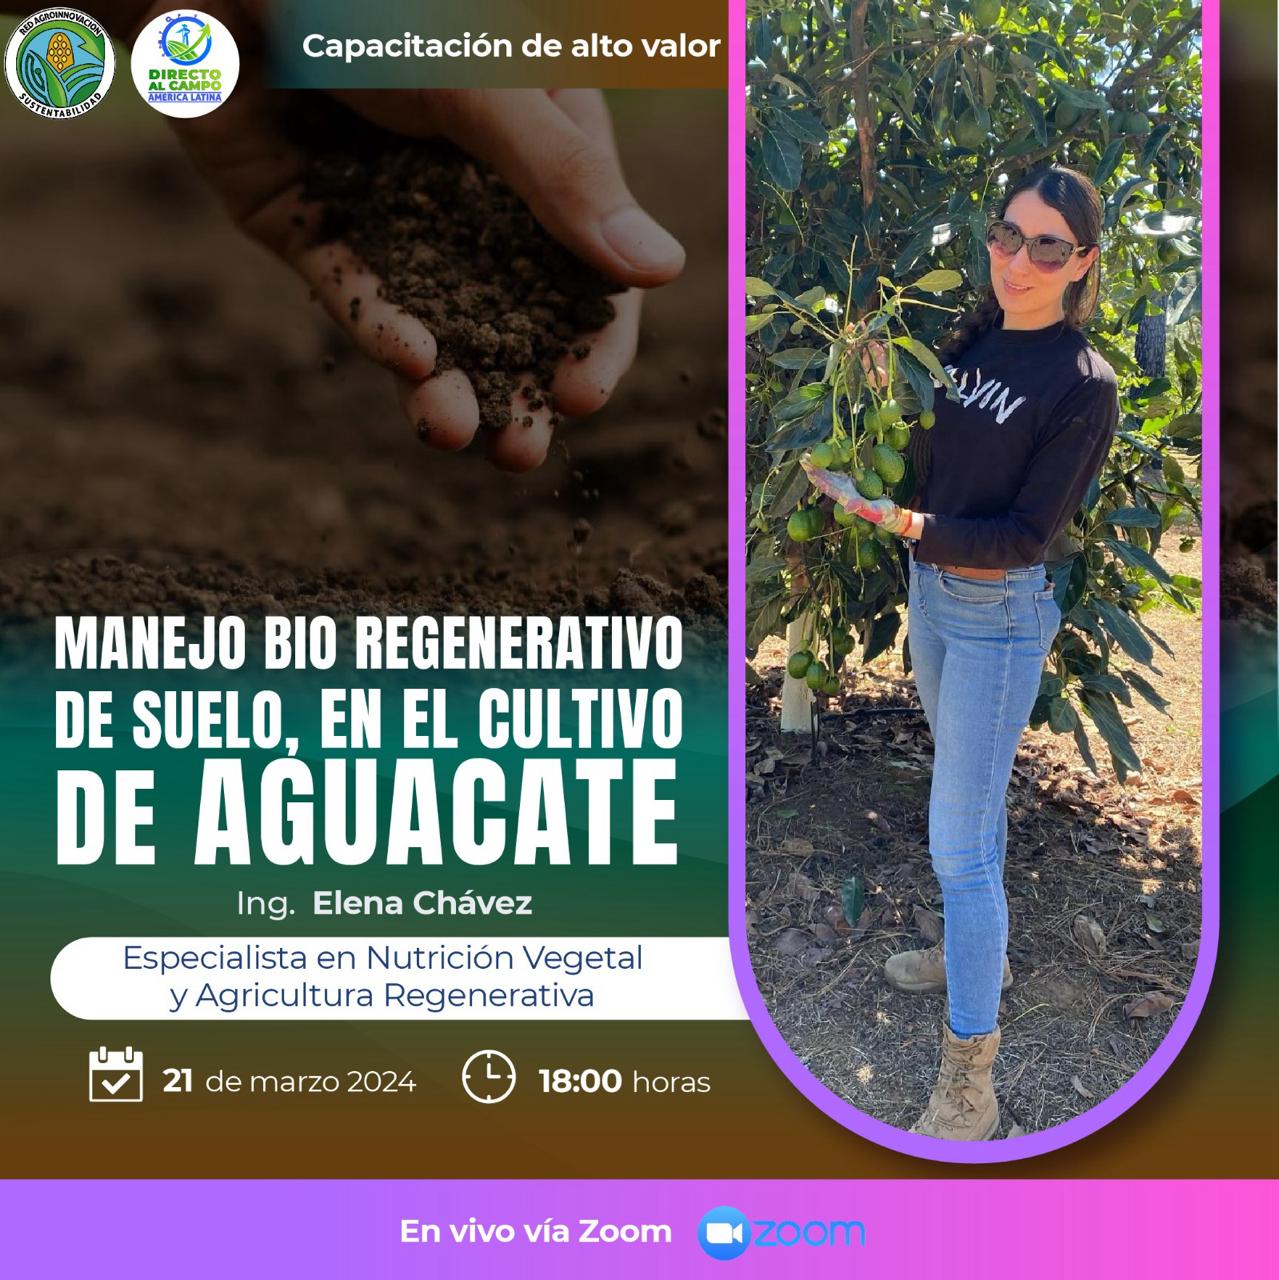 Manejo bio regenerativo de suelo en el cultivo de aguacate